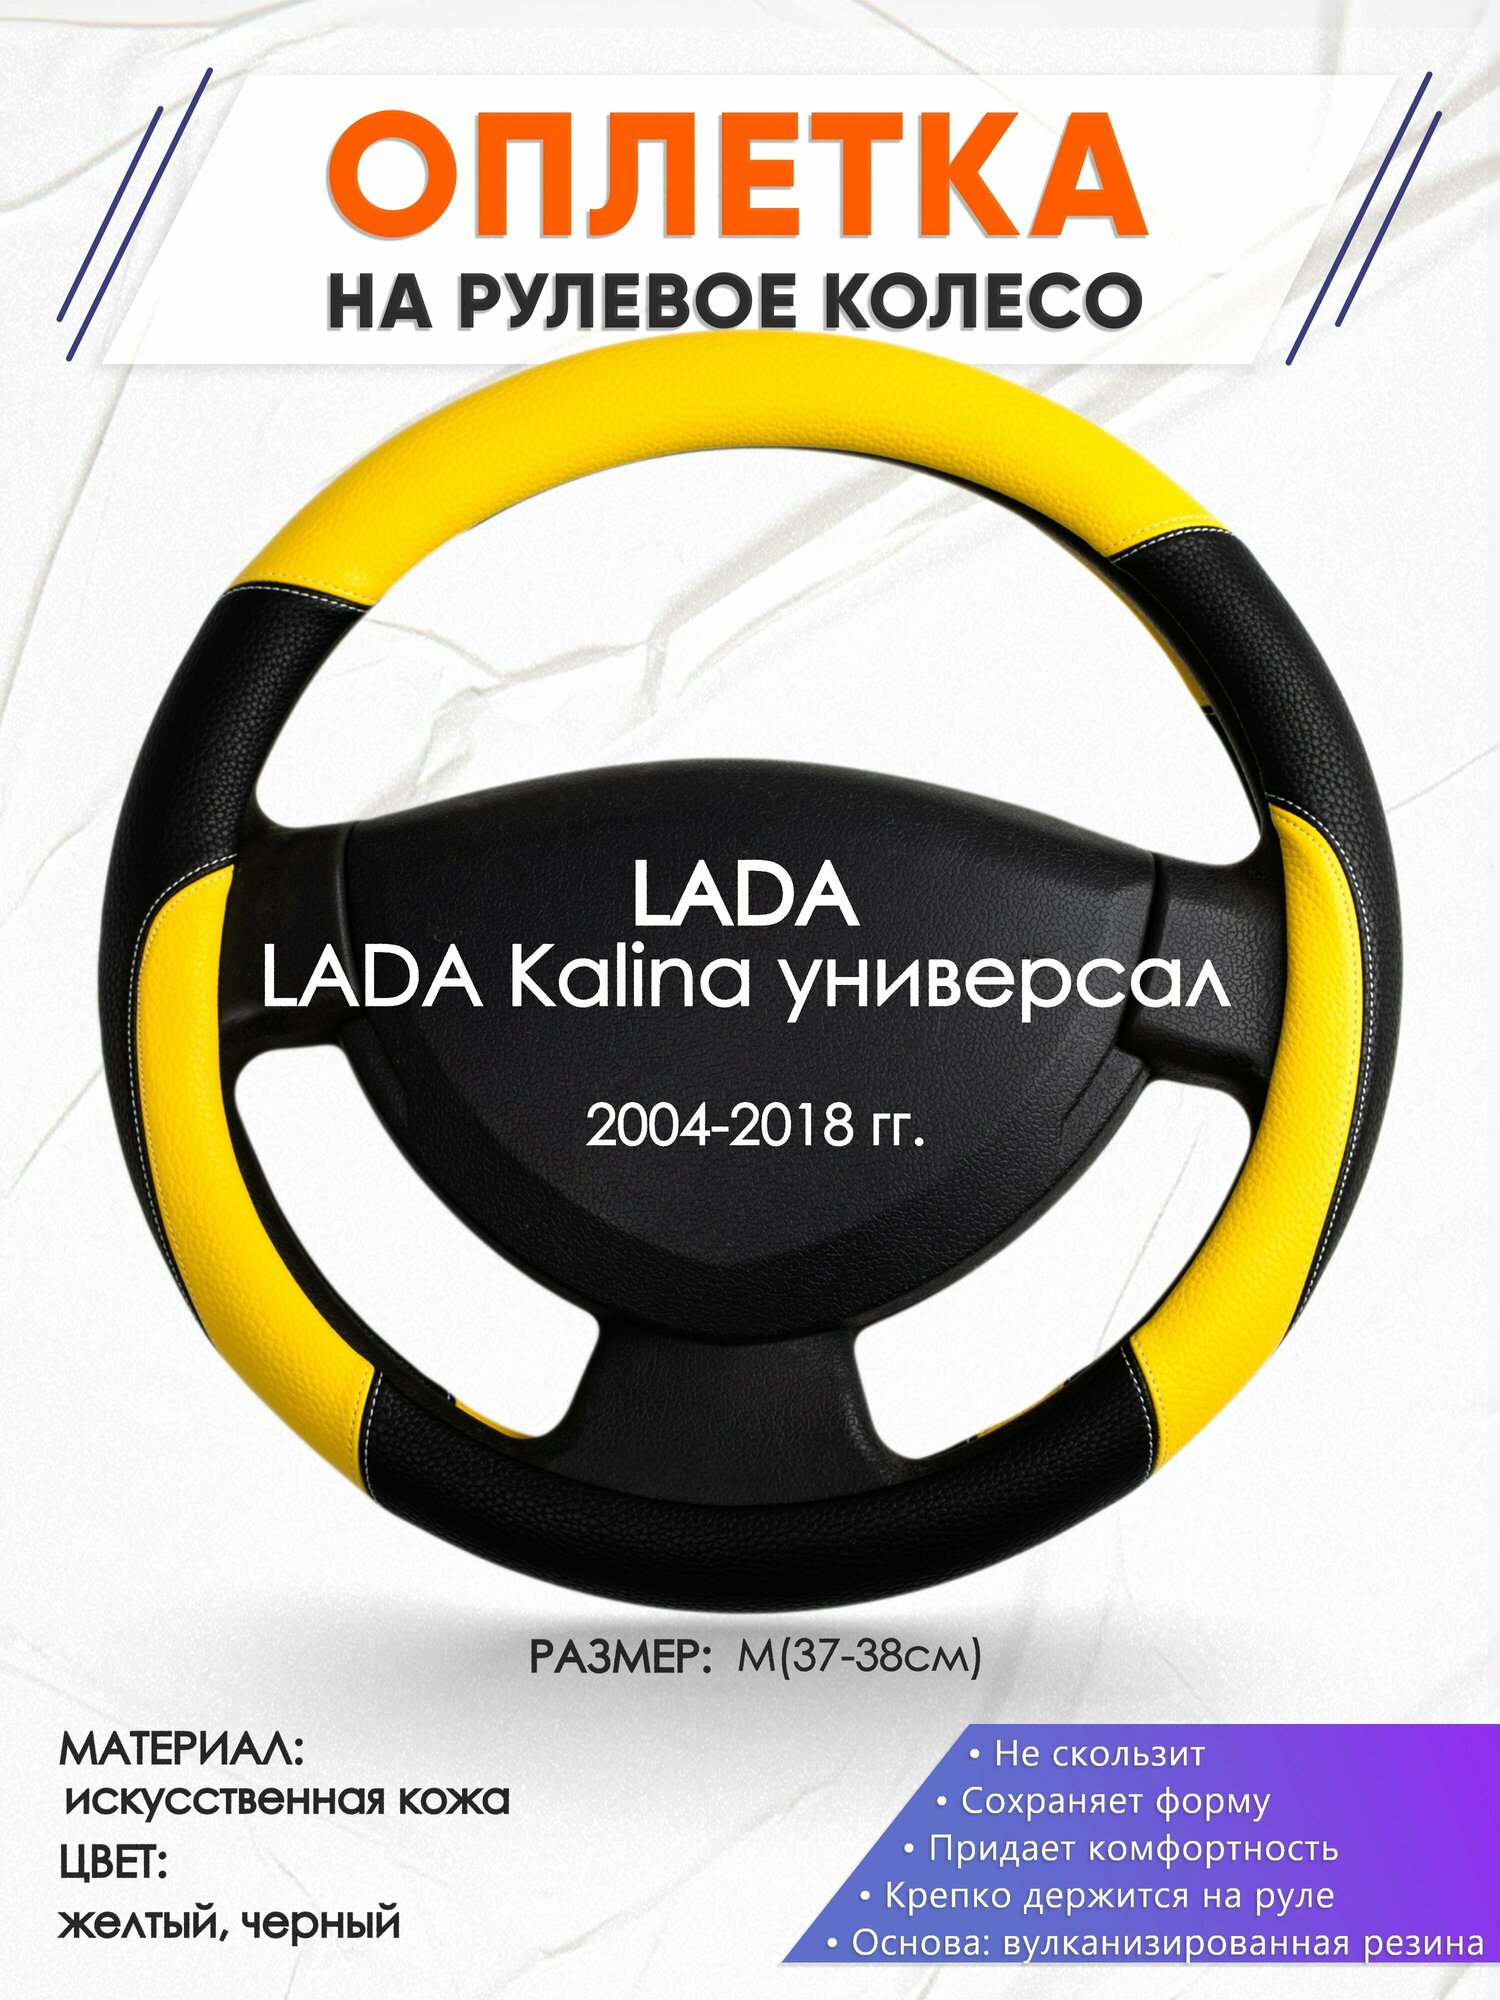 Оплетка наруль для LADA Kalina универсал(Лада Калина) 2004-2018 годов выпуска, размер M(37-38см), Искусственная кожа 64